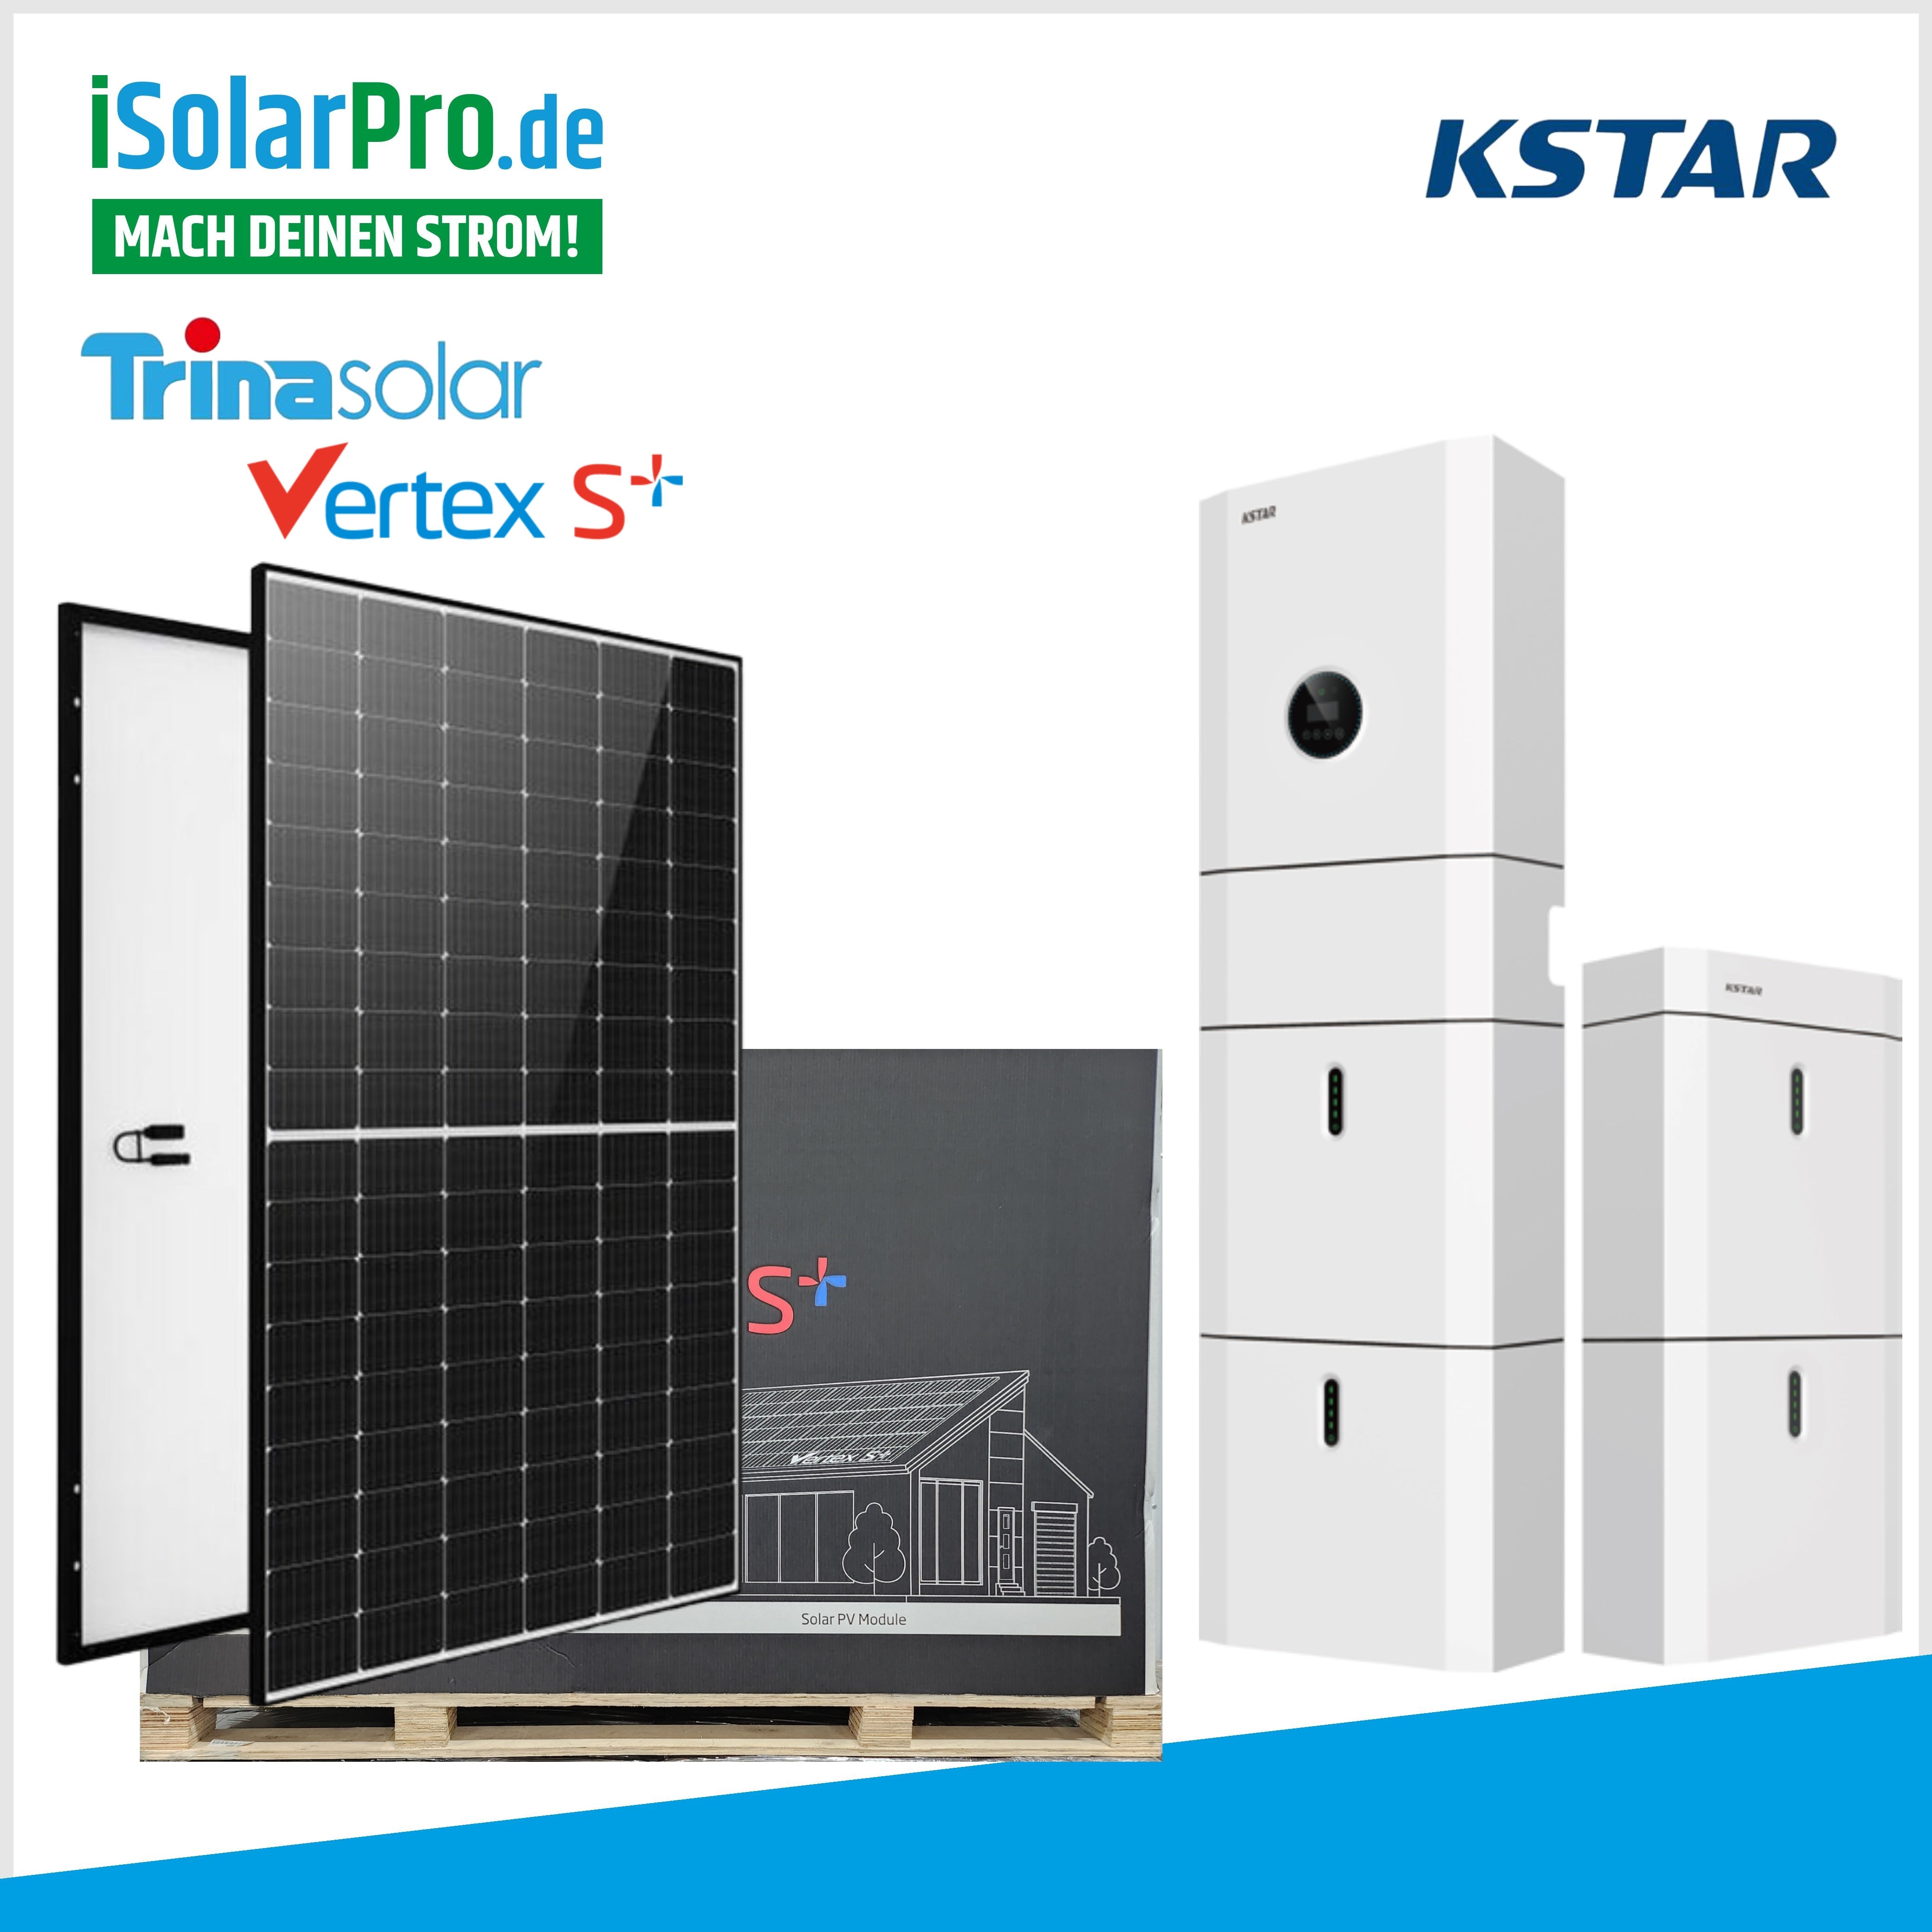 10 kW Solaranlage 3 Phasen mit Speicher & Montagesystem